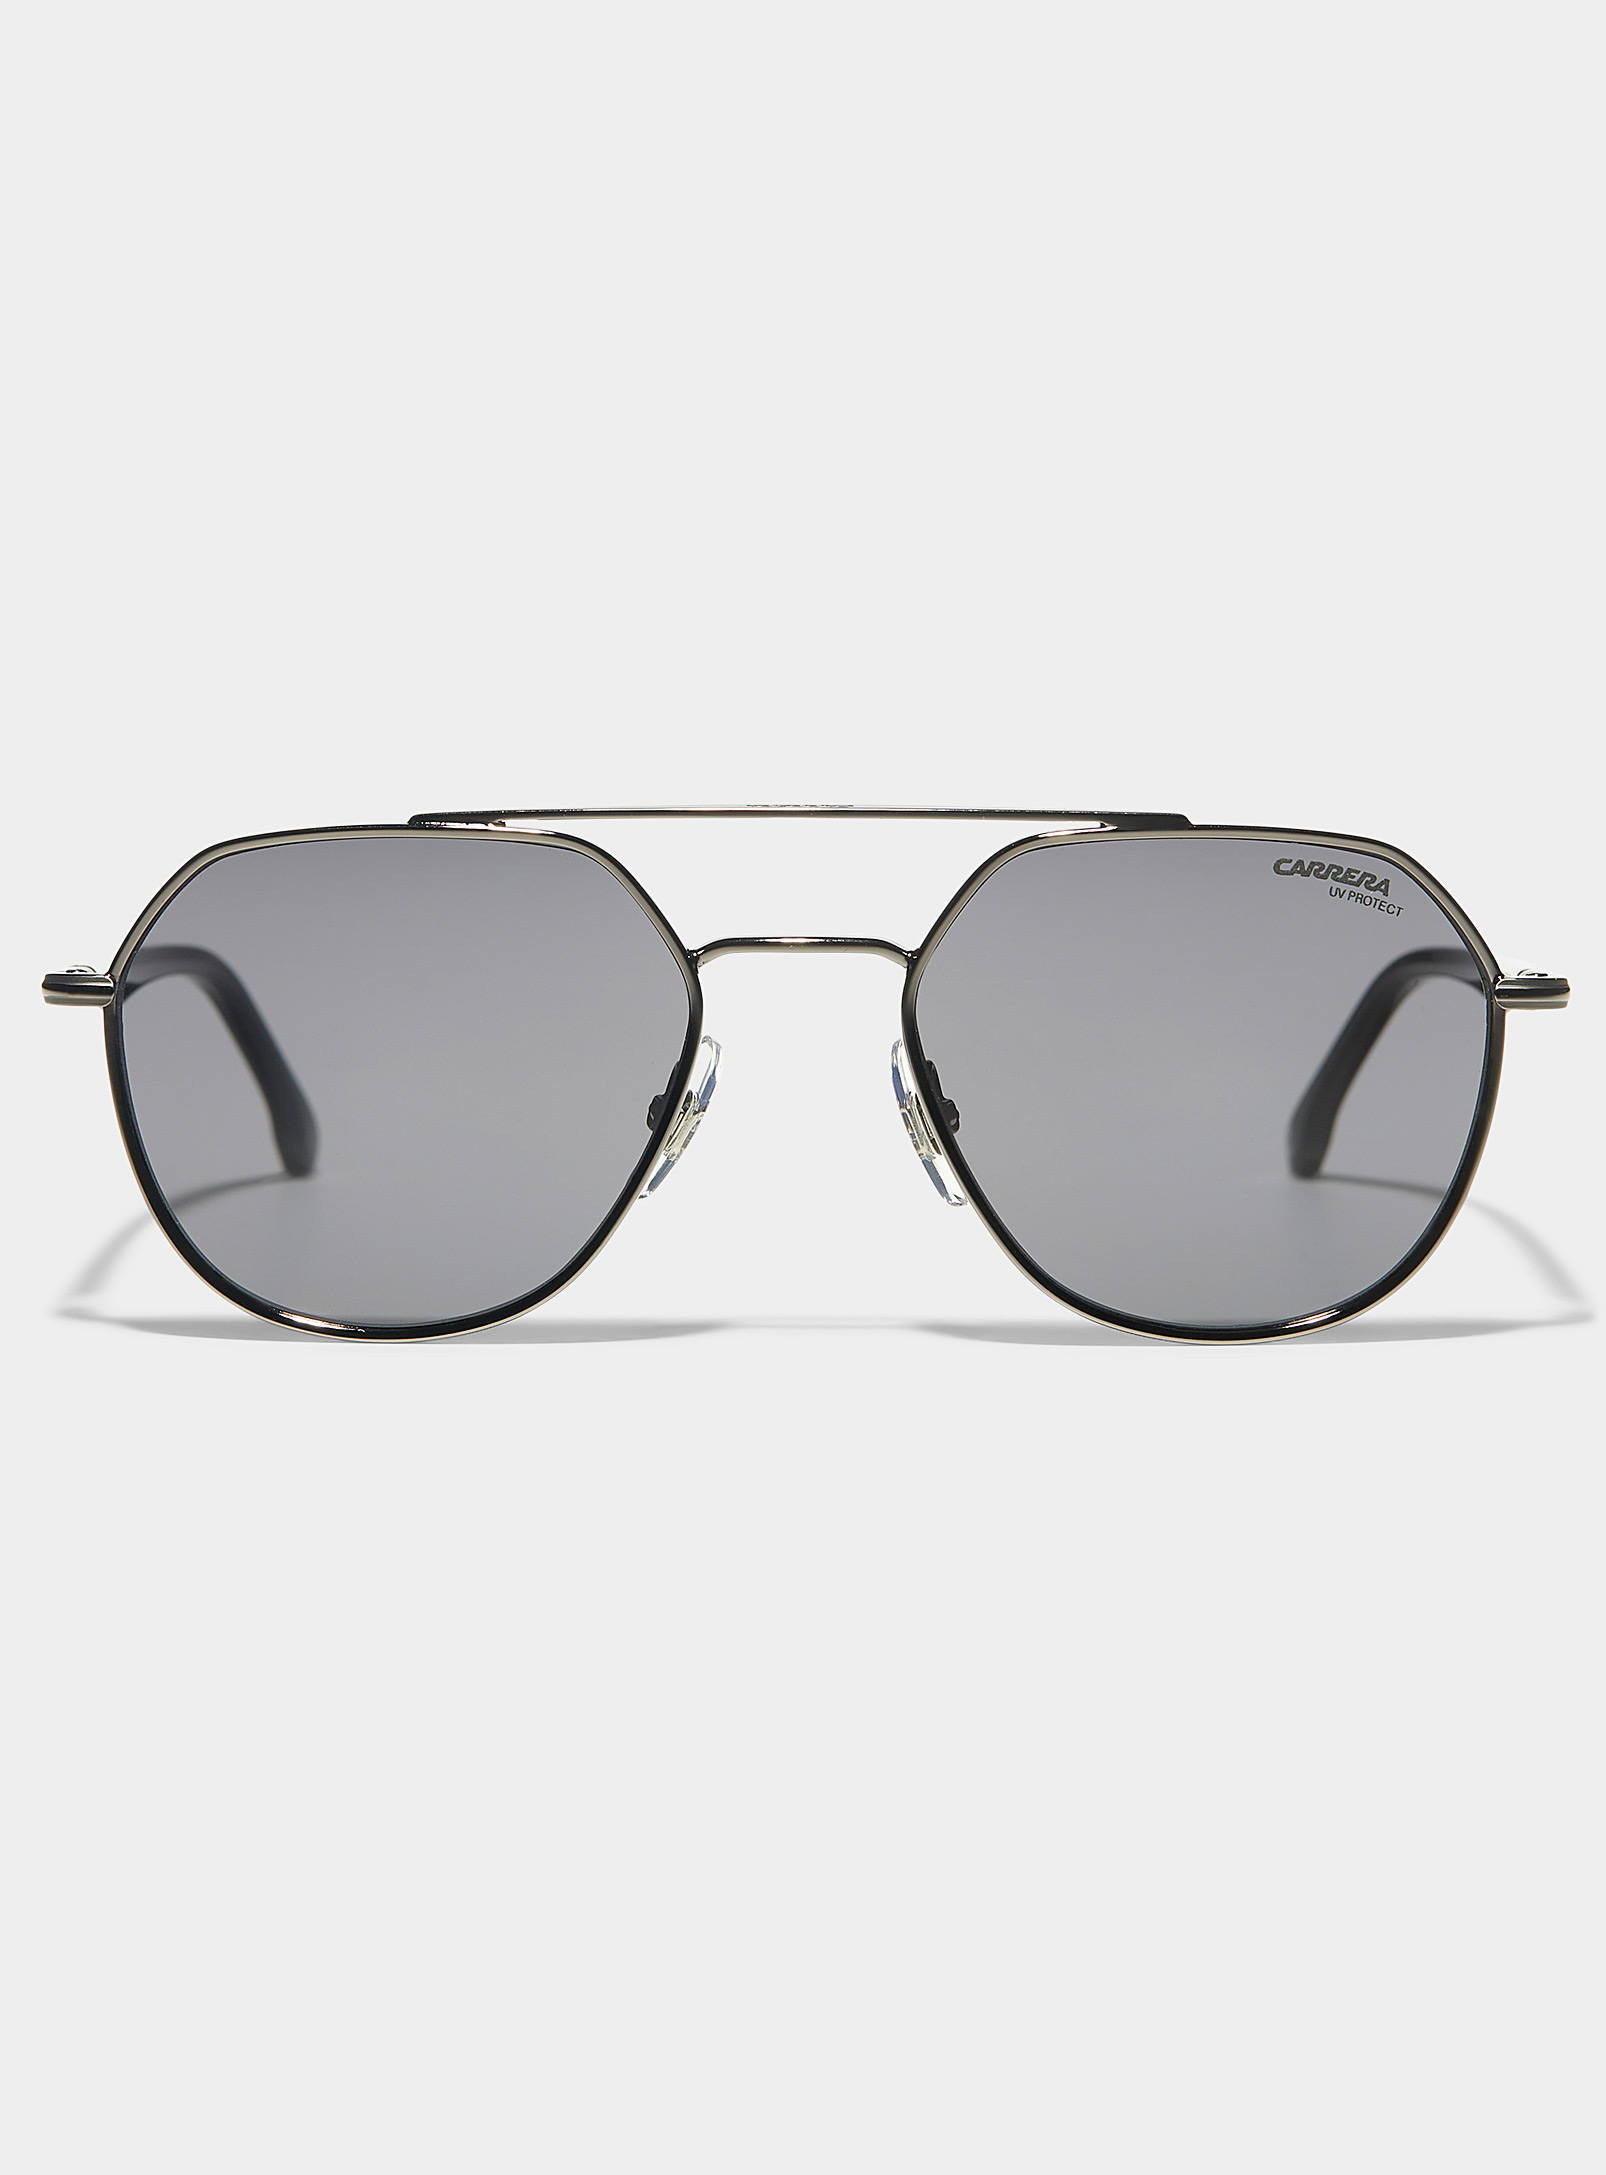 Carrera Round Aviator Sunglasses In Black | ModeSens